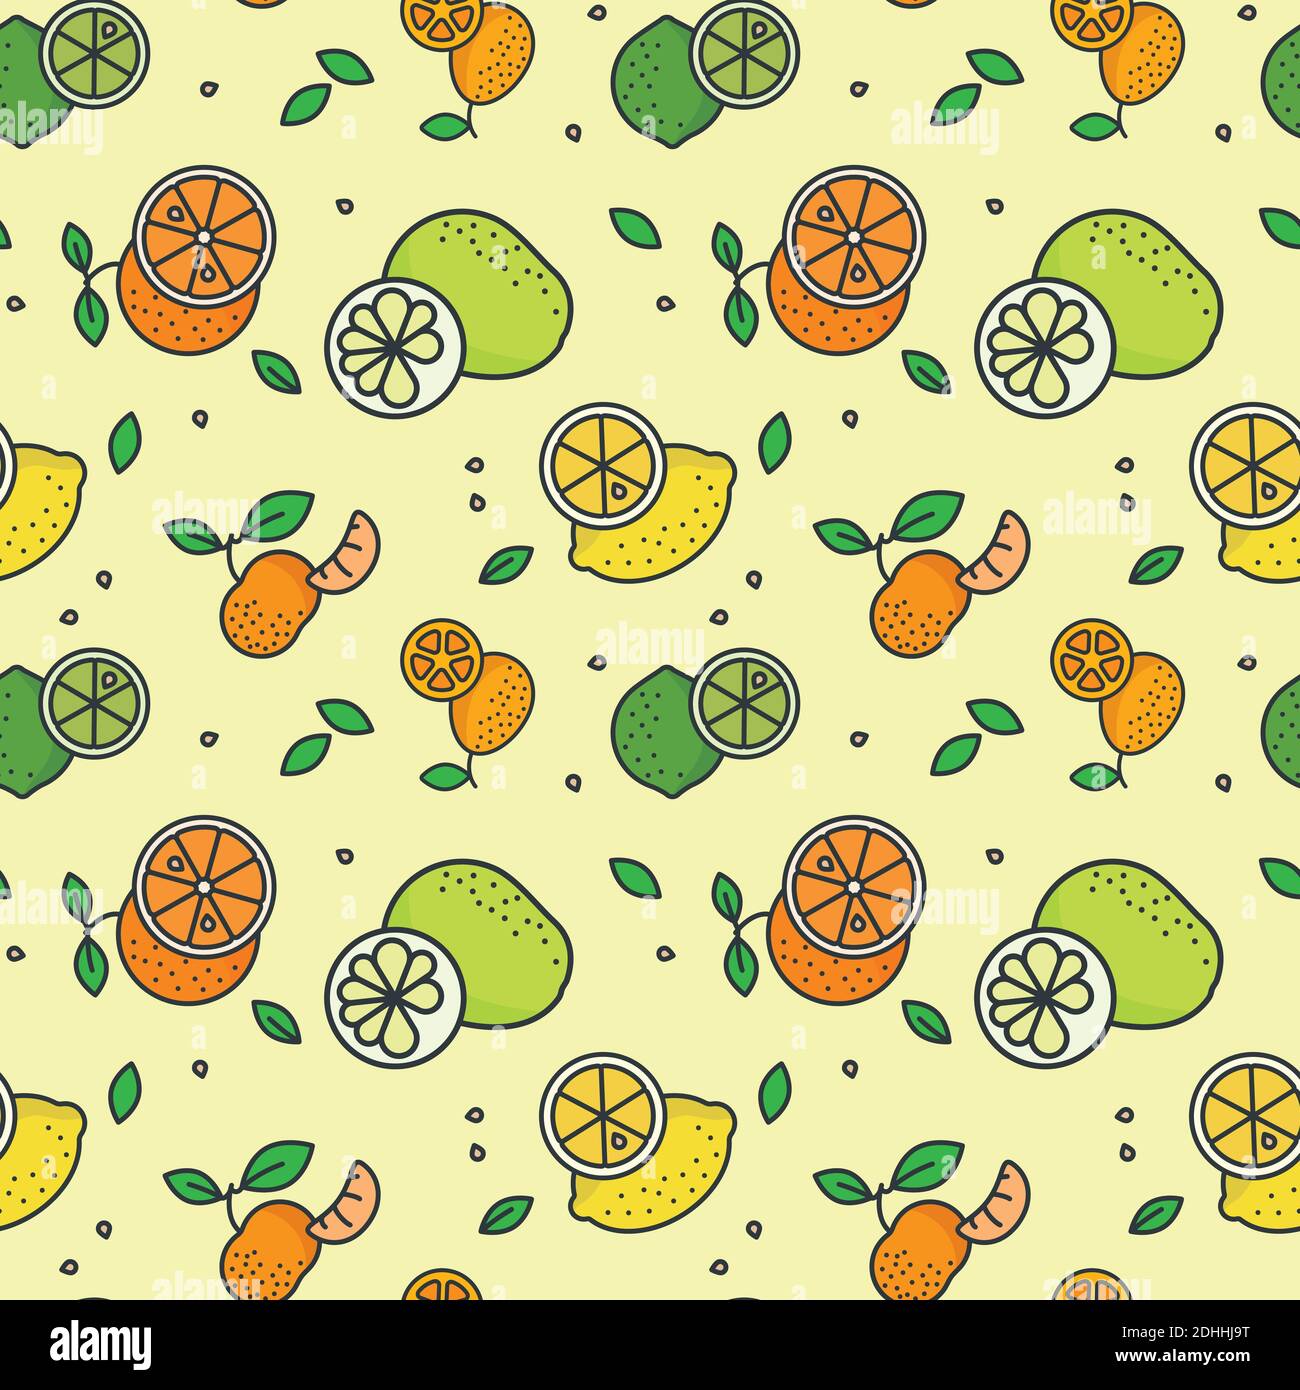 Zitrusfrüchte Vielfalt nahtlose Vektor Muster Tapete. Zitronen, Limetten, Pomelos, Mandarinorangen und Kumquats auf pastellgelbem Hintergrund. Stock Vektor